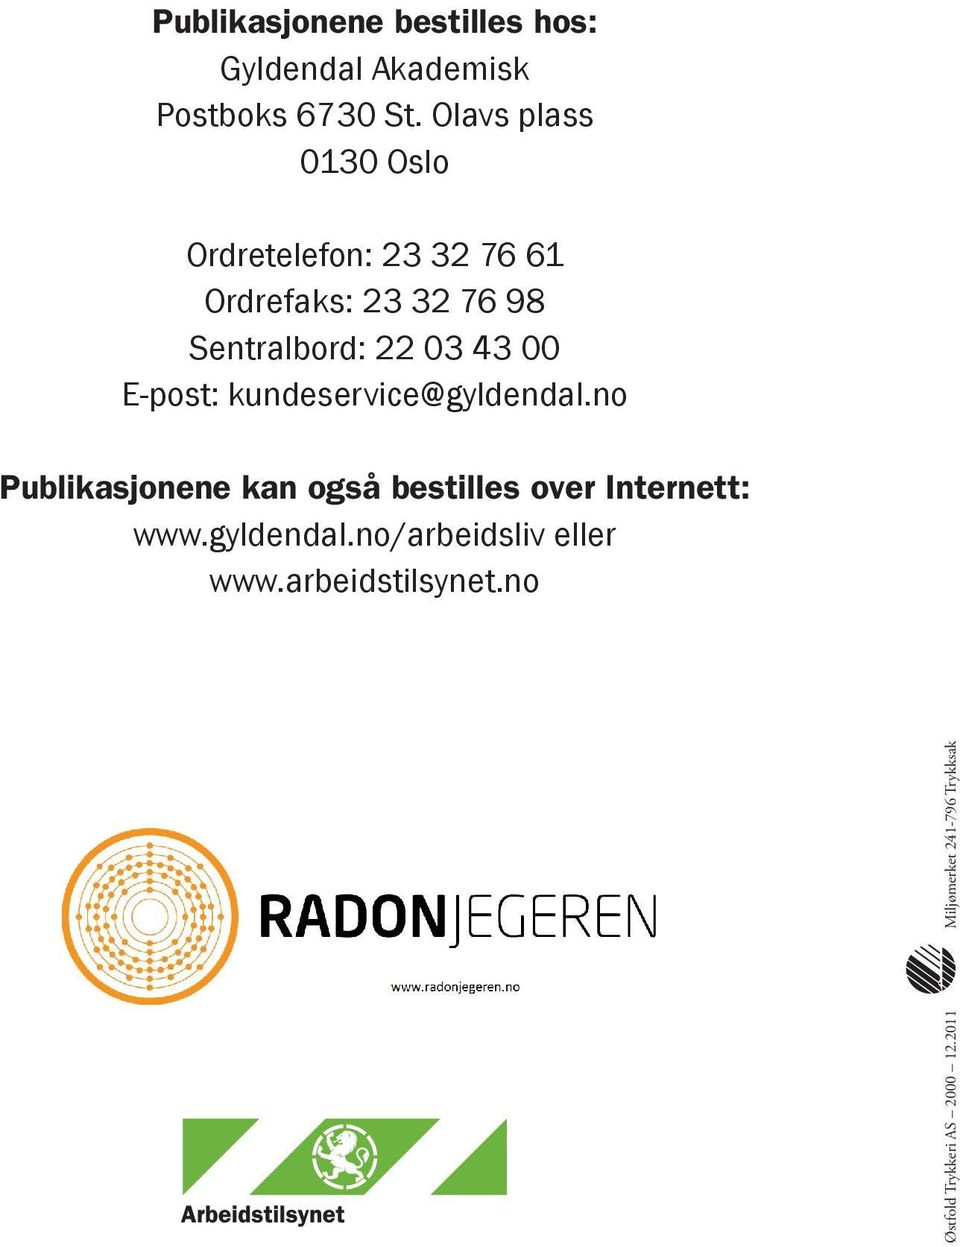 43 00 E-post: kundeservice@gyldendal.